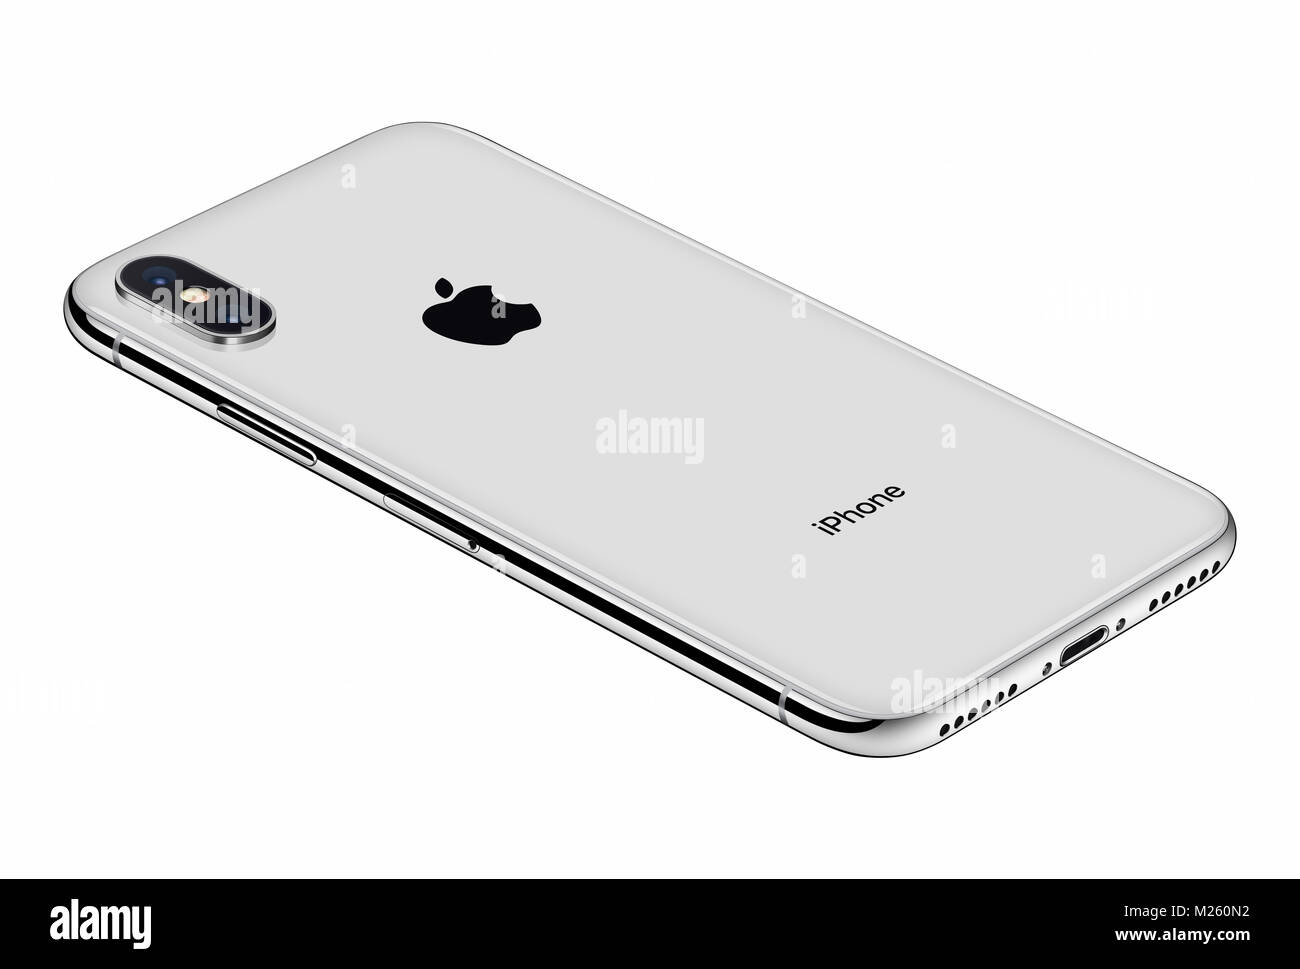 Perspektivische Ansicht Silber Apple iPhone X Rückseite auf weißem Hintergrund. iPhone 10 ist das neueste Smartphone von Apple Inc mit rahmenlosen Design. Stockfoto